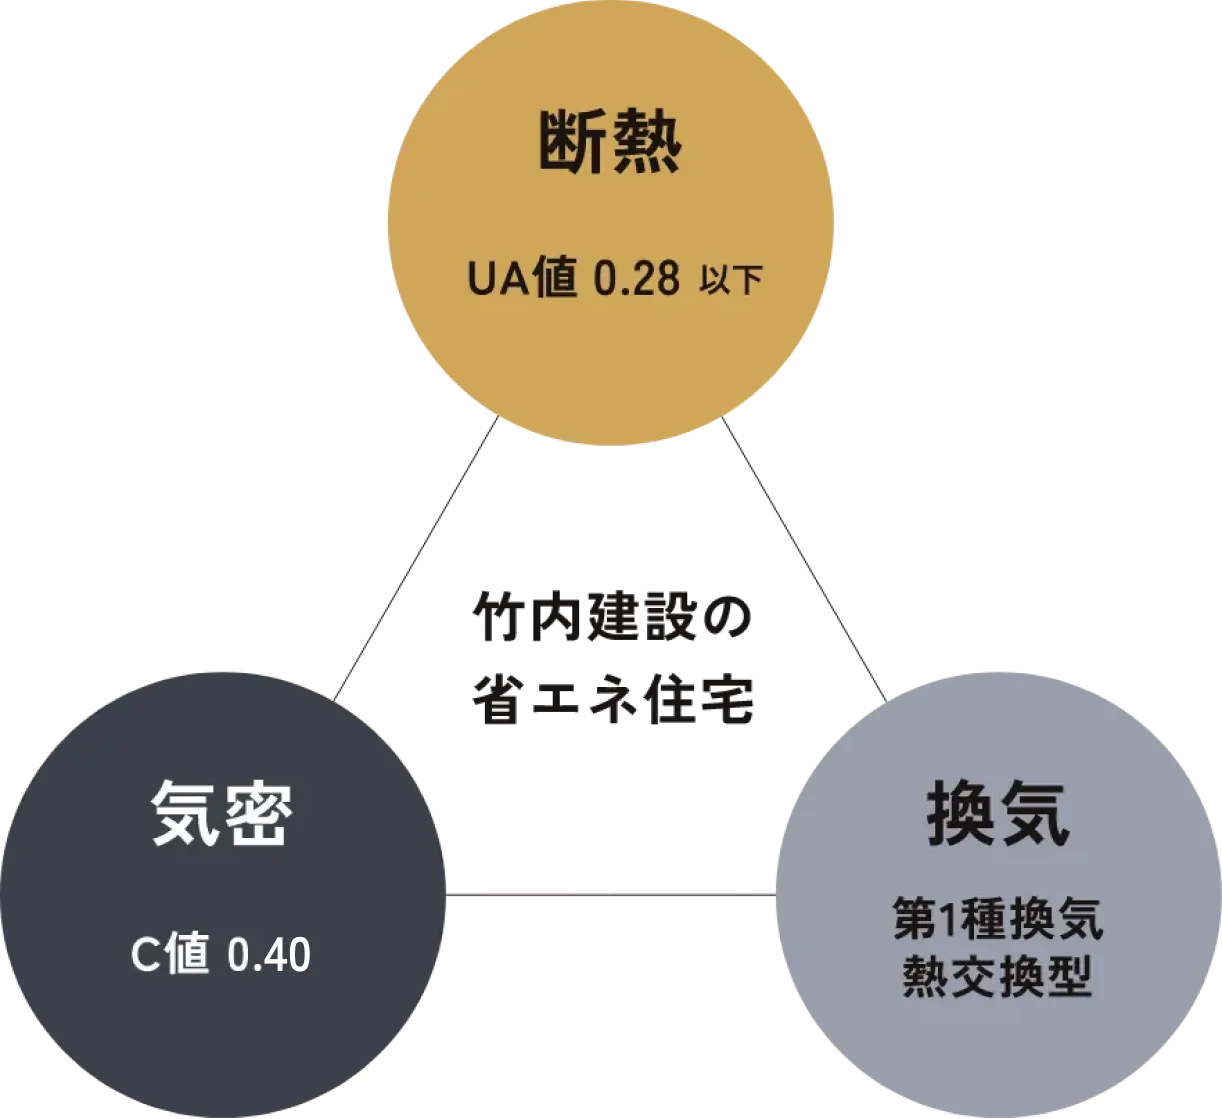 断熱 UA値 0.28以下 / 気密 C値 0.44 / 換気 第1種換気 熱交換型